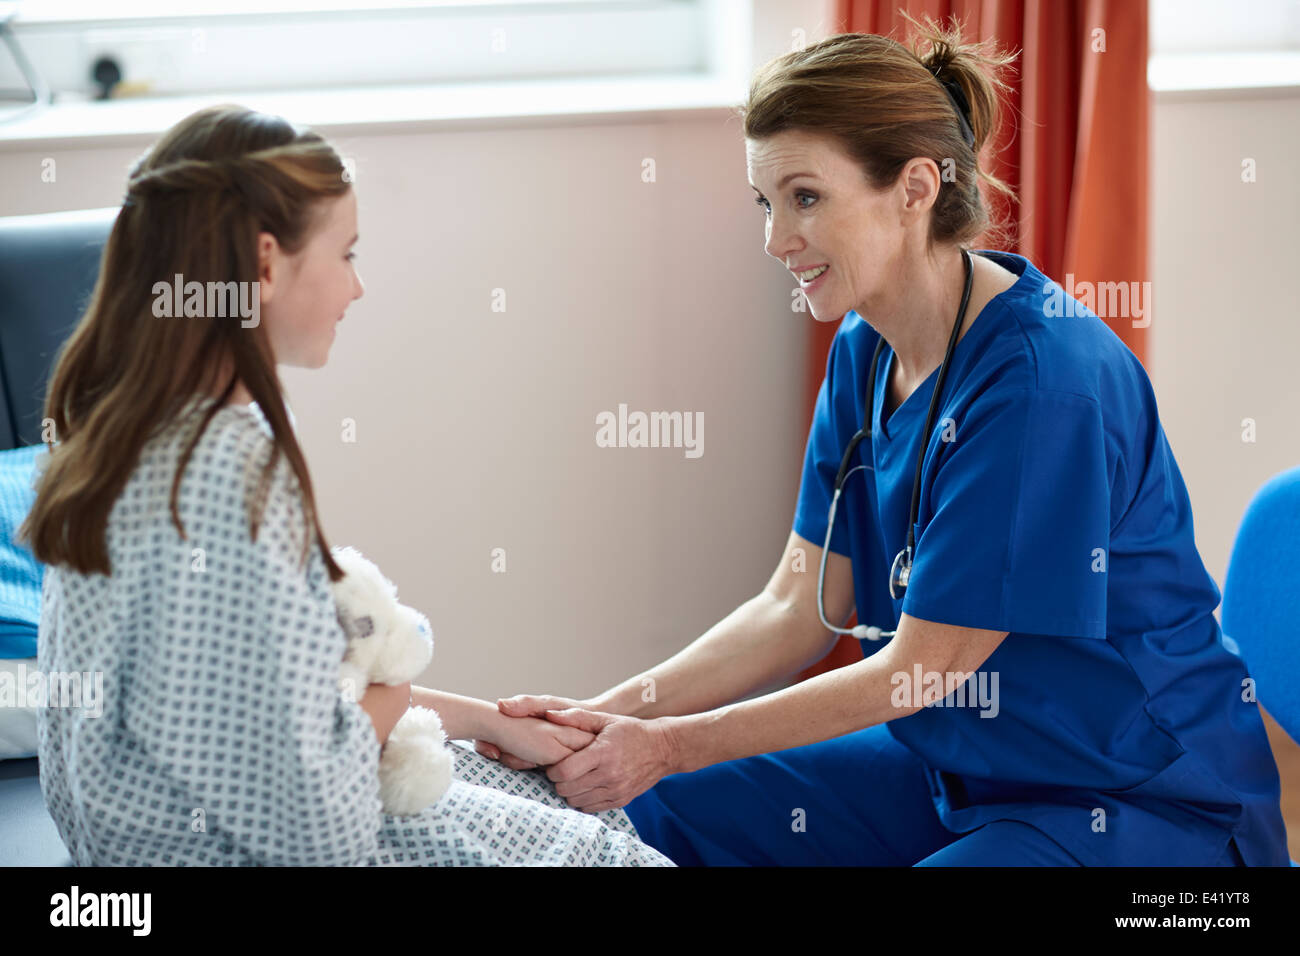 Nurse talking to girl Stock Photo